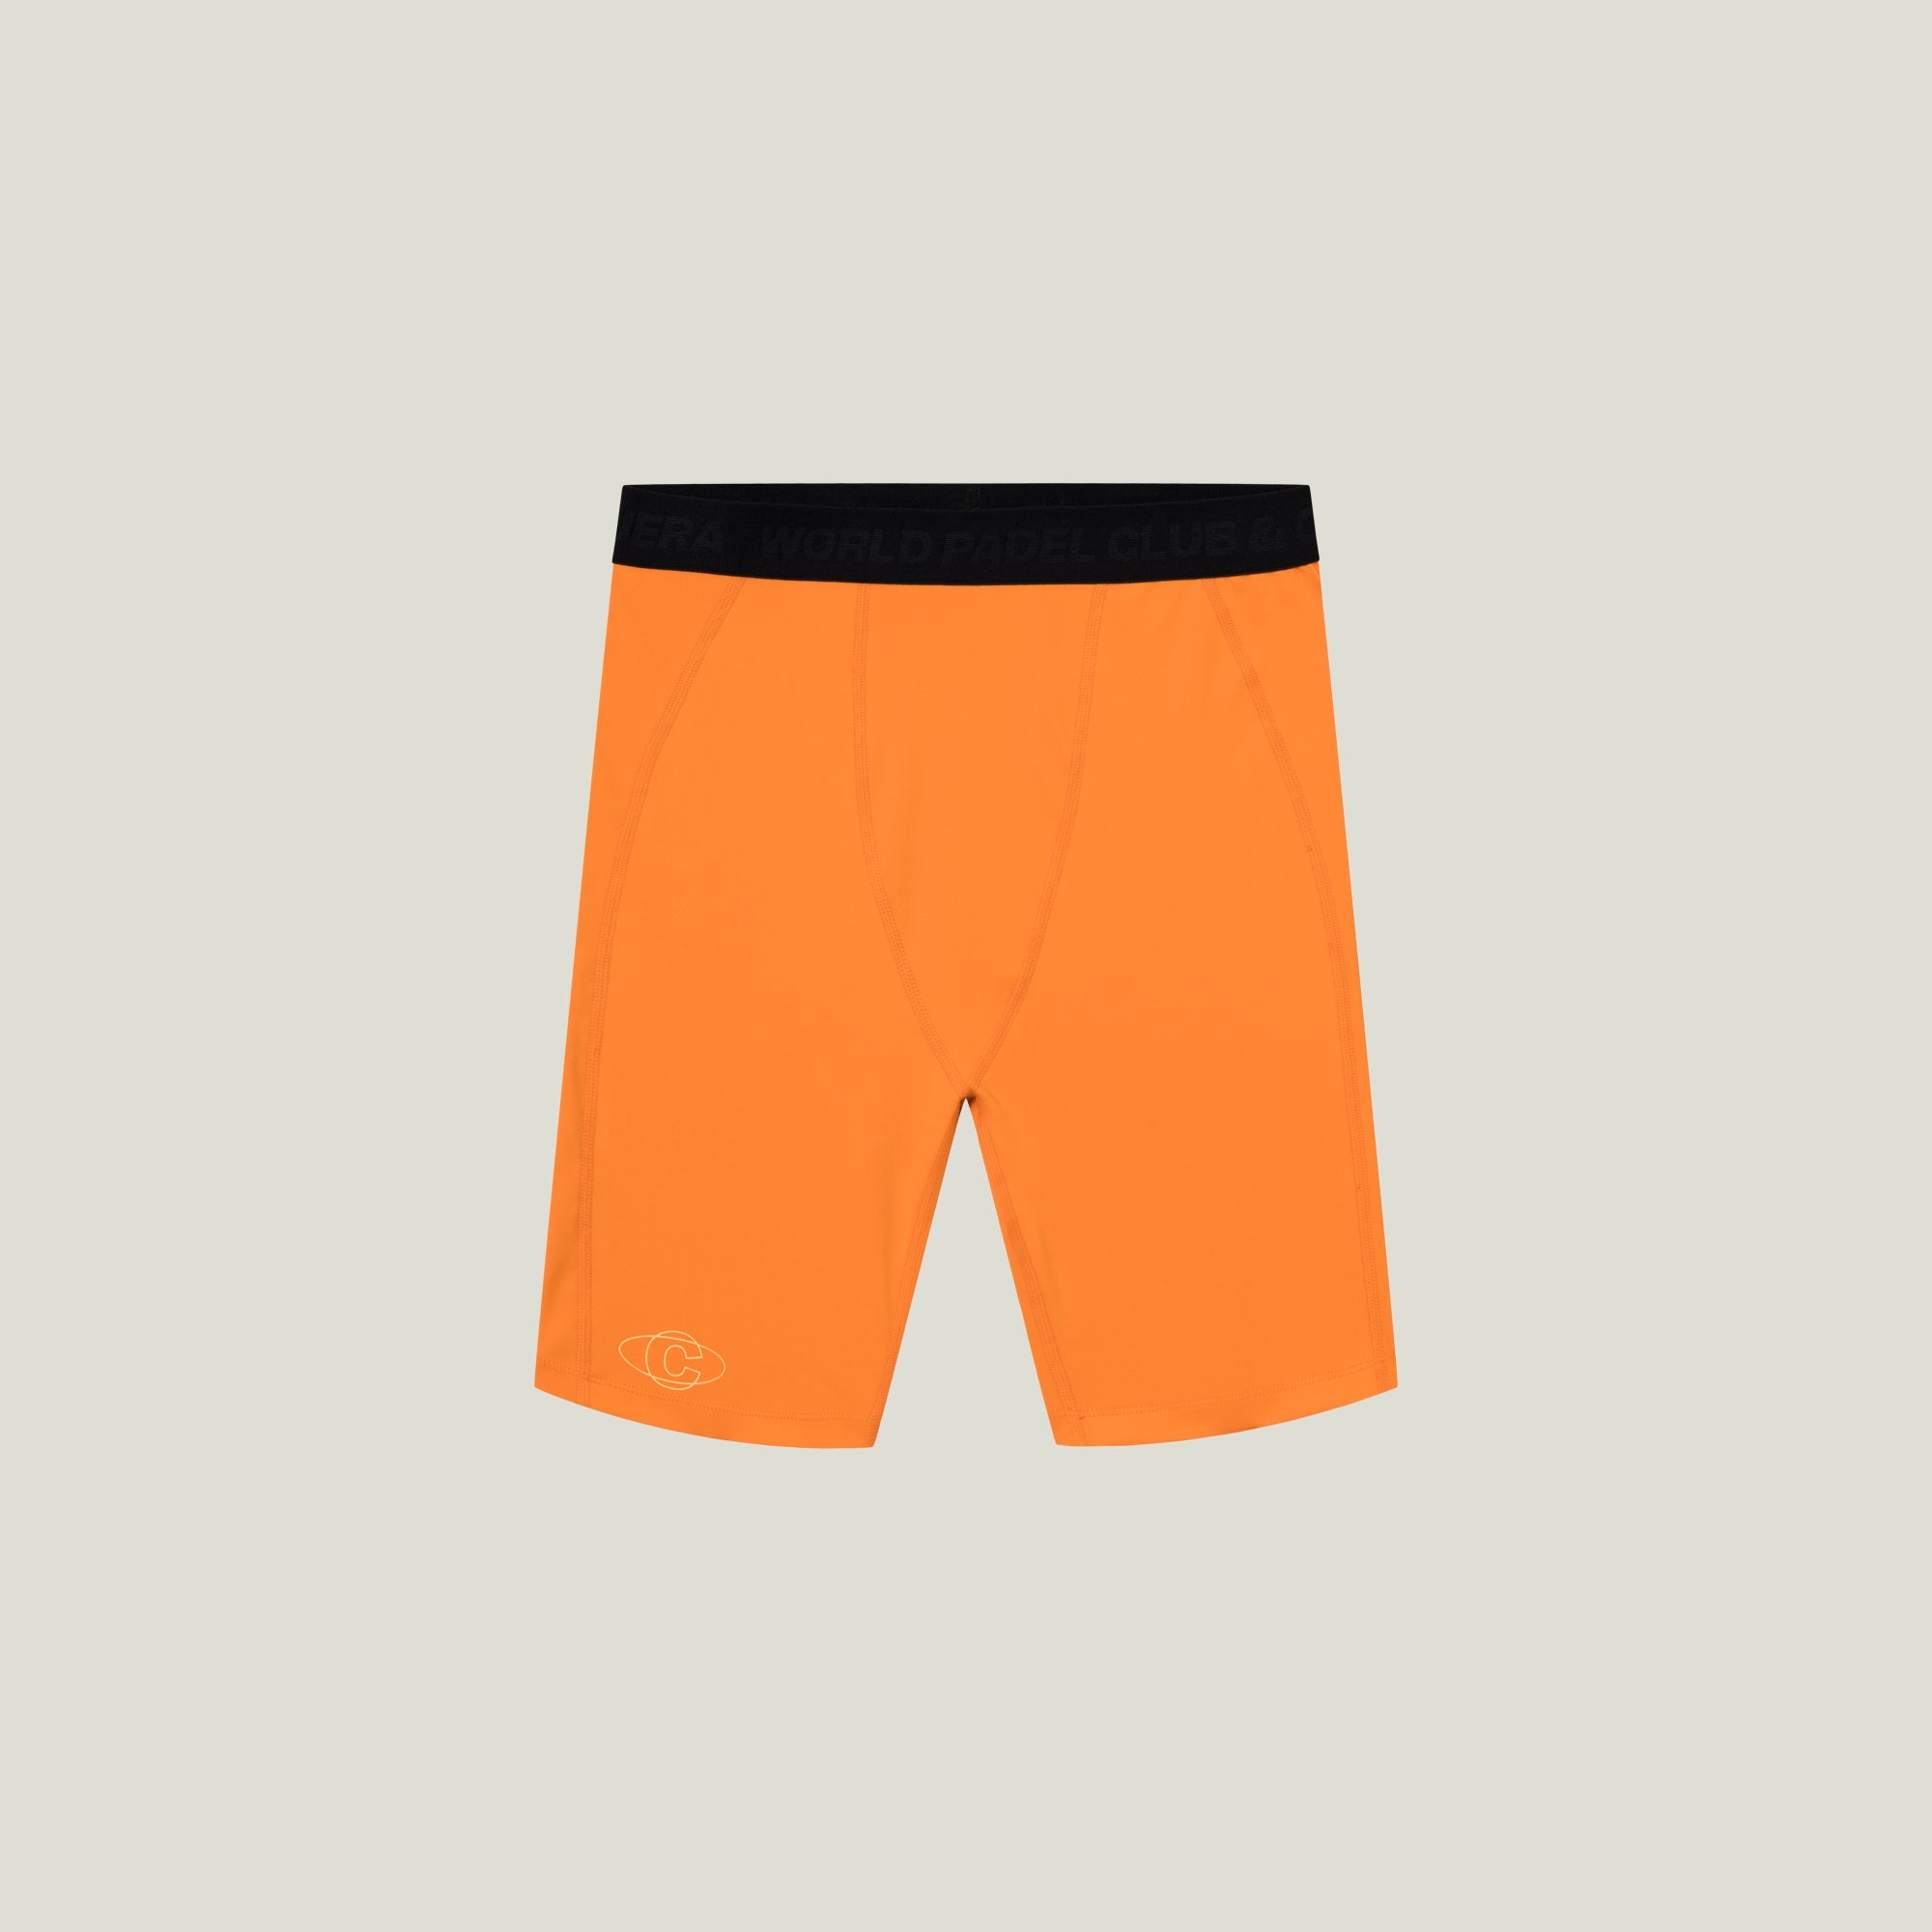 Cuera Oncourt Layer Tights (Orange) - L